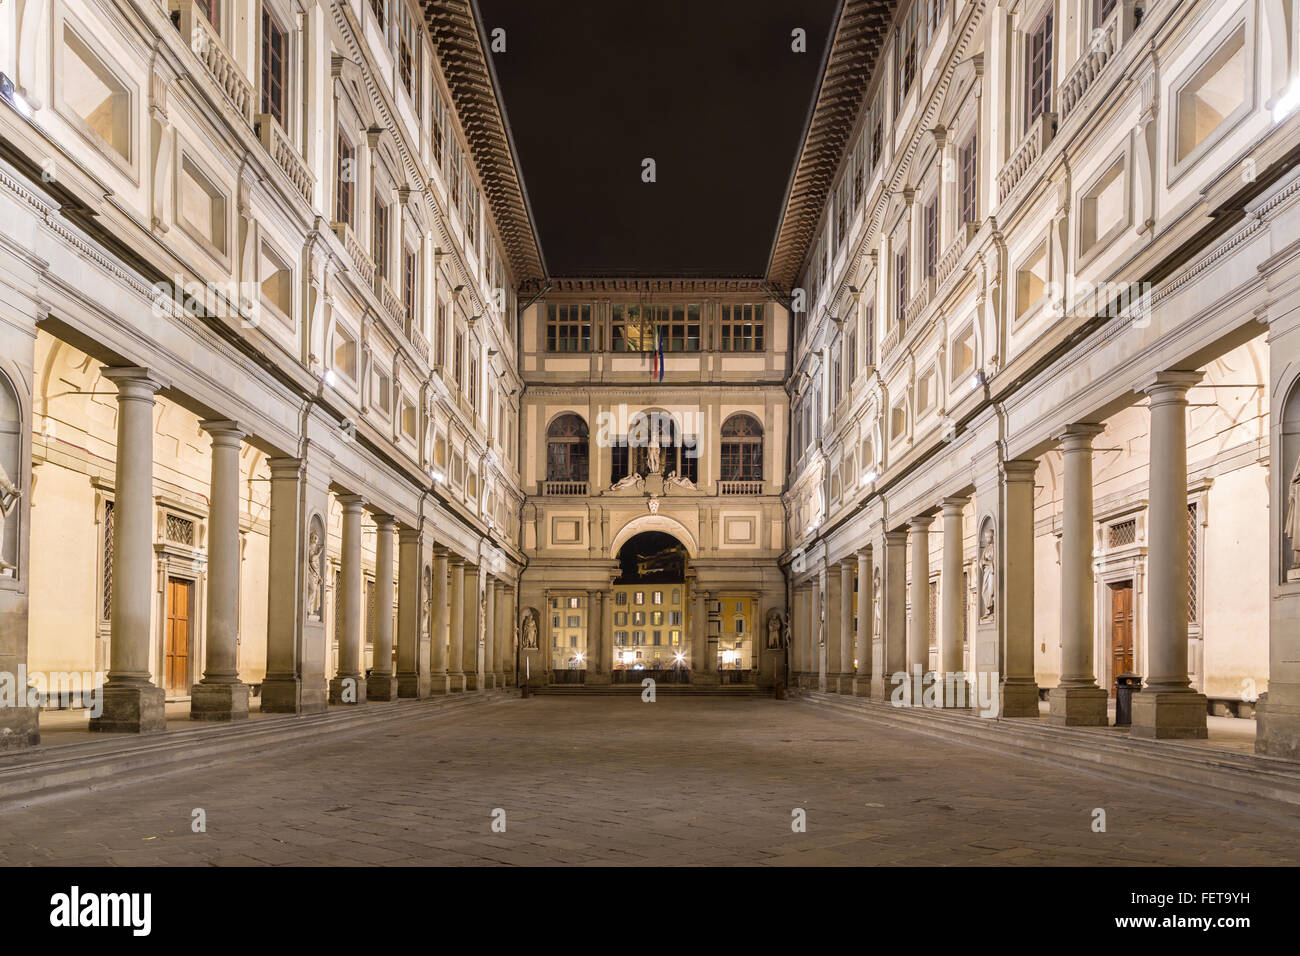 Galería de los Uffizi, noche, Florencia, Toscana, Italia Foto de stock